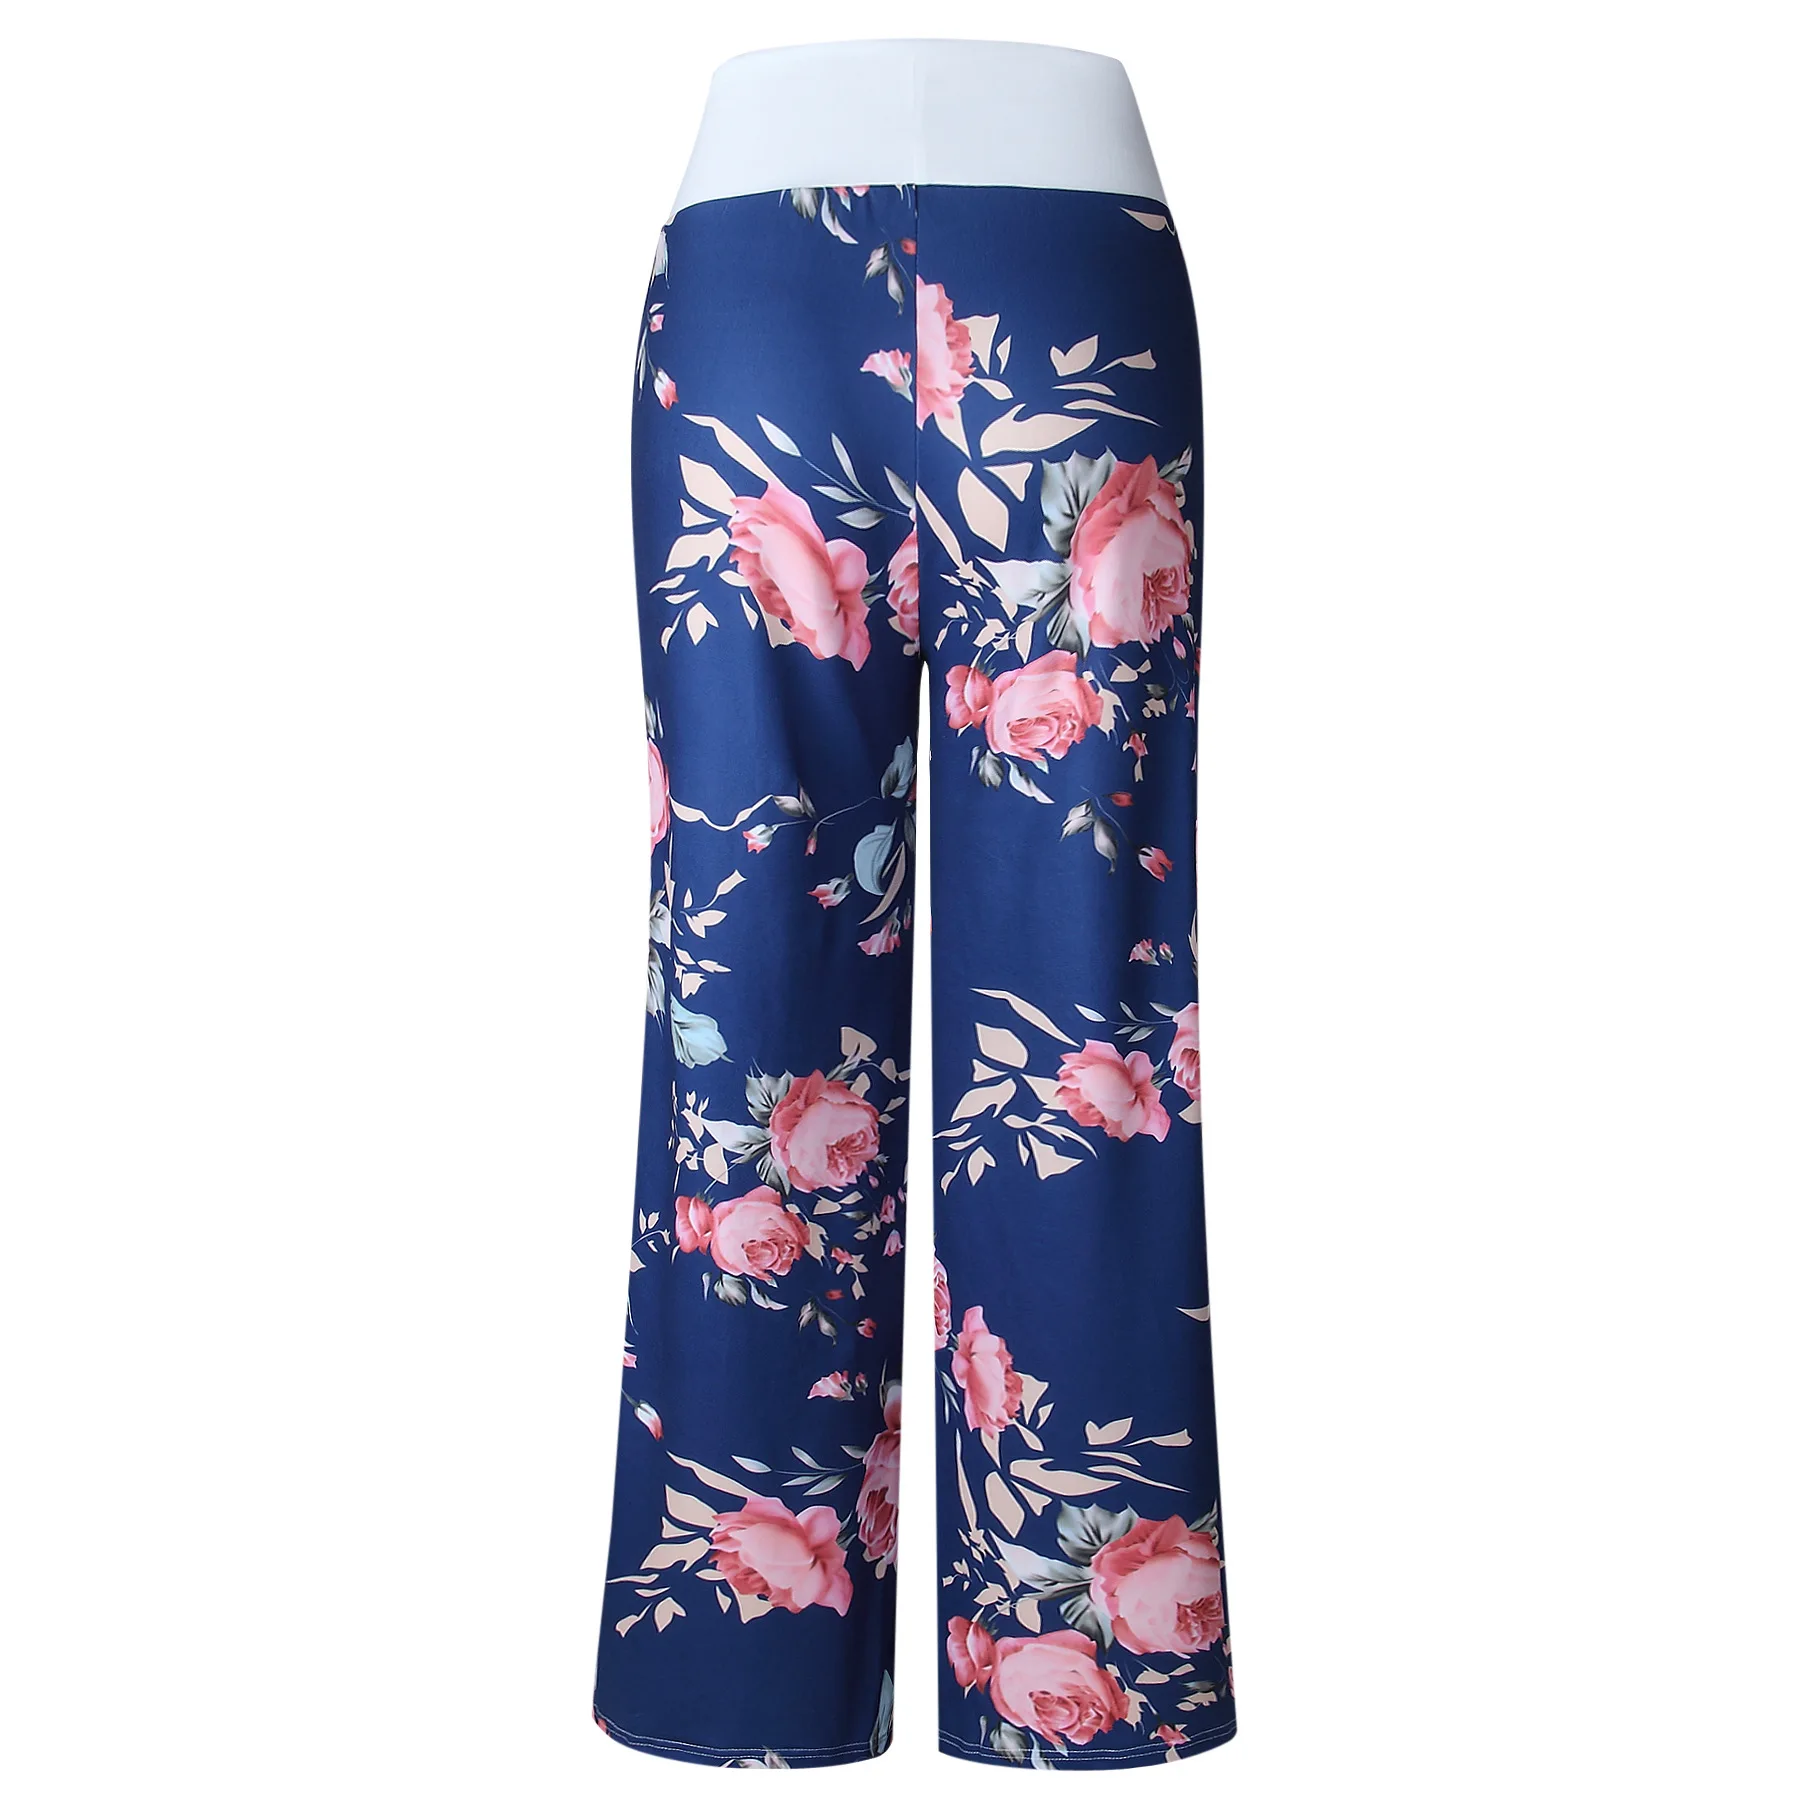 Женские брюки, Новое поступление, повседневные брюки с ремешками, Европейская мода, камуфляжные брюки с цветочным принтом, Прямая поставка, OYM0447